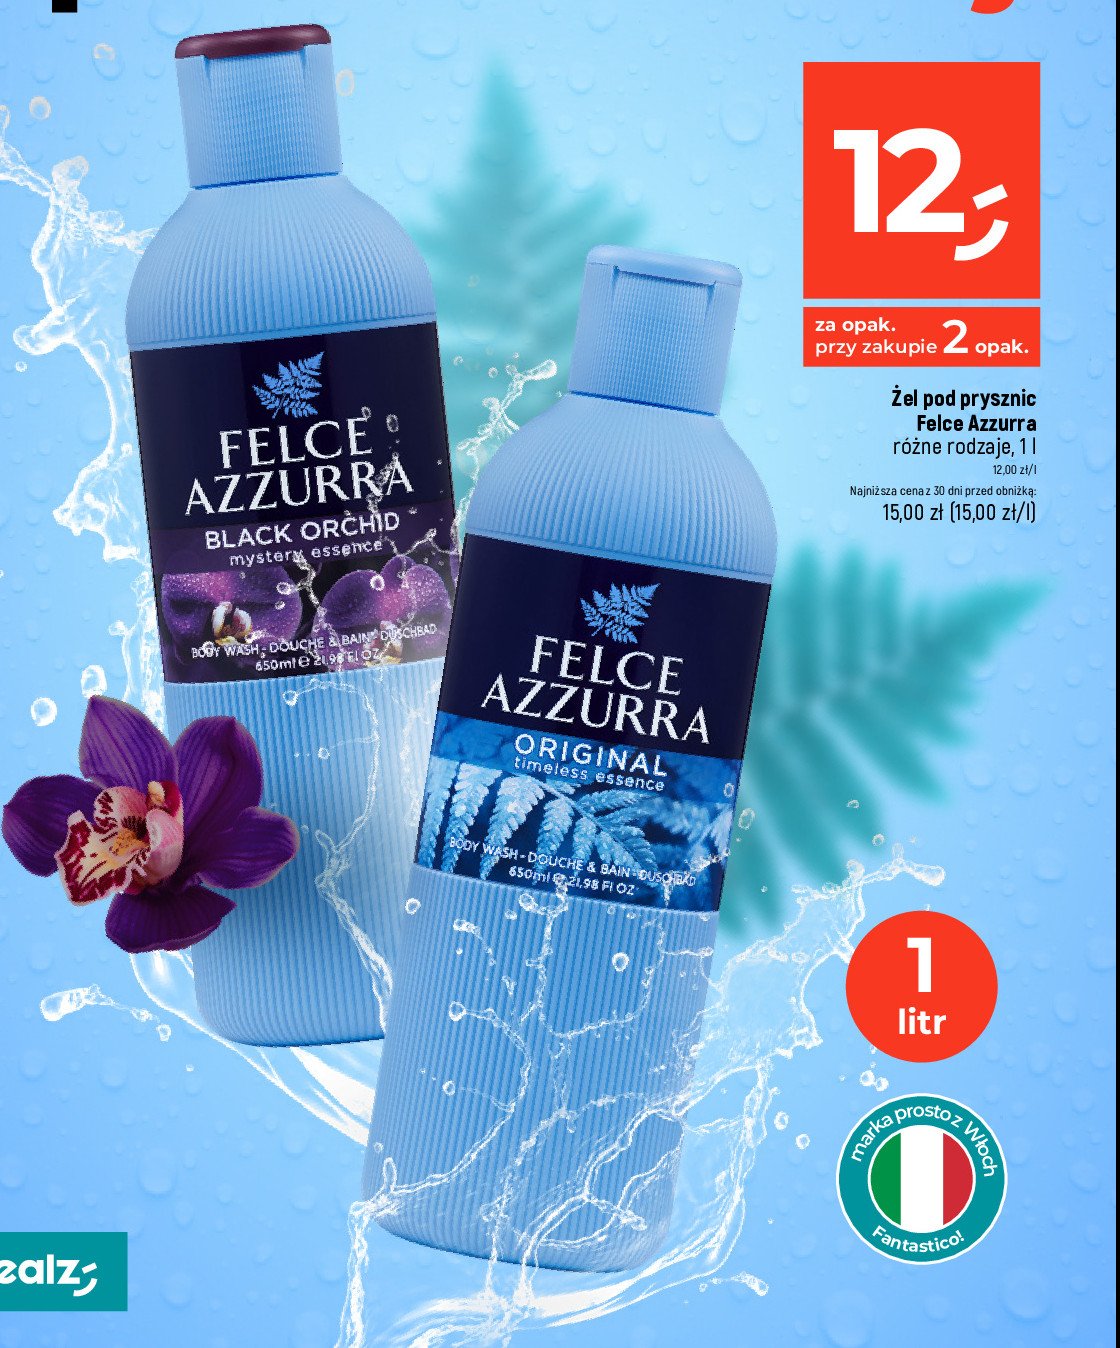 Żel do kąpieli black orchid Felce azzurra promocja